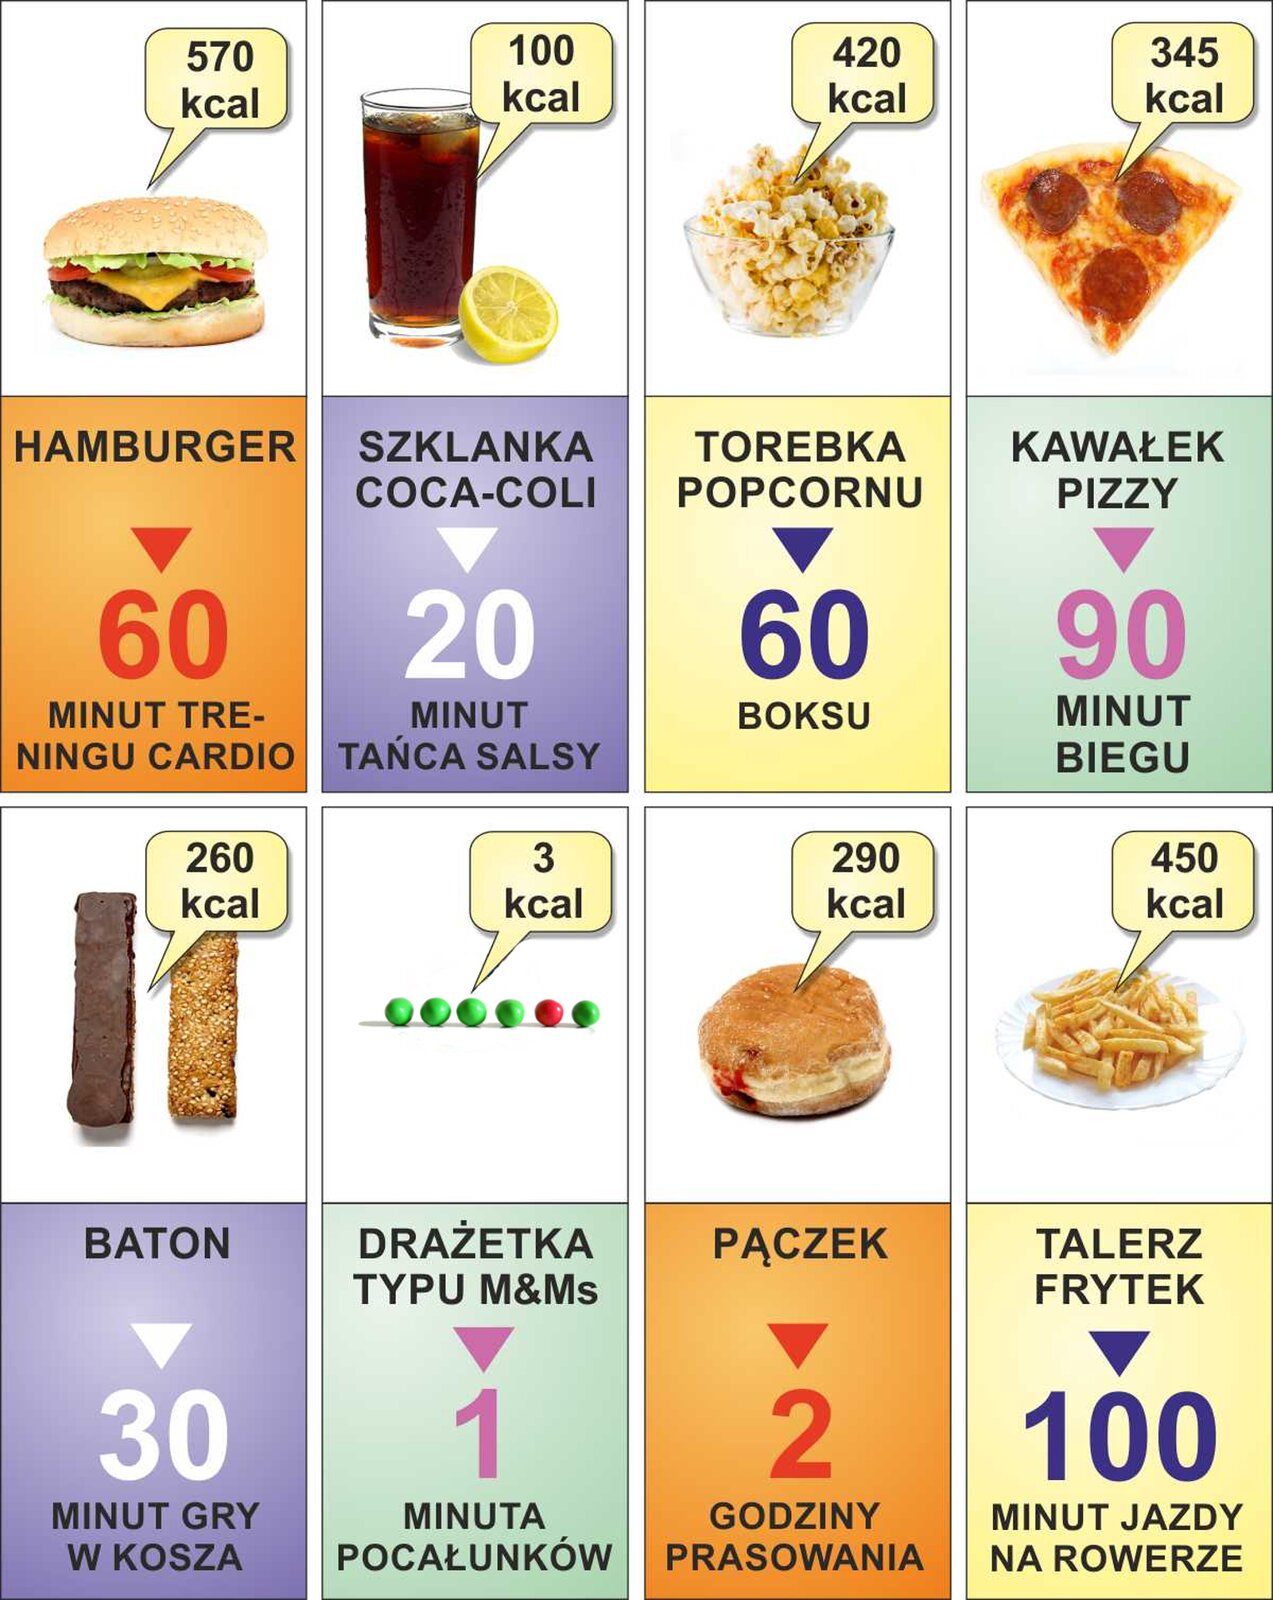 Rys. 1. Infografika składa się z ośmiu zdjęć przedstawiających różne produkty i potrawy, ich wartość kaloryczną oraz informację, ile czasu trzeba poświęcić, aby spalić kalorie w nich zawarte.  1. Hamburger, 570 kilokalorii, 60 minut treningu kardio.  2. Szklanka coca‑coli, 100 kilokalorii, 20 minut tańca salsa.  3. Miseczka popcornu, 420 kilokalorii, 60 minut boksu.  4. Mały kawałek pizzy, 345 kilokalorii, 90 minut biegu.  5. Baton oblany czekoladą, 260 kilokalorii, 30 minut gry w kosza.  6. Drażetka typu M&amp;Ms, 3 kilokalorie, jedna minuta pocałunków.  7. Pączek, 290 kilokalorii, 2 godziny prasowania.  8. Talerz frytek, 450 kilokalorii, 100 minut jazdy na rowerze.